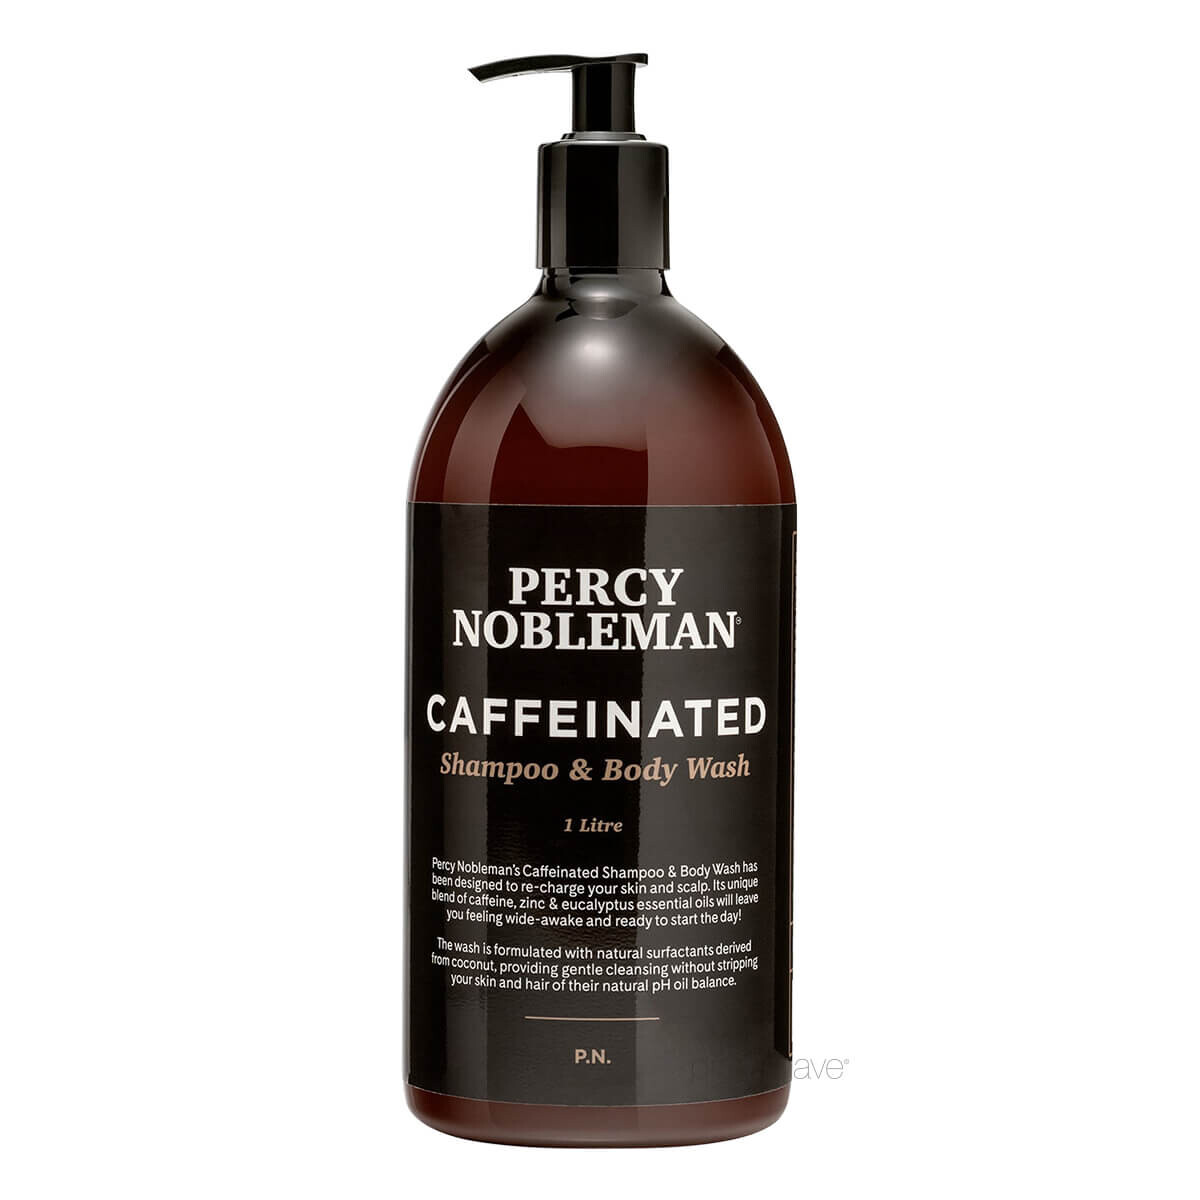 #1 - Percy Nobleman Caffeinated Shampoo & Body Wash, 1000 ml.